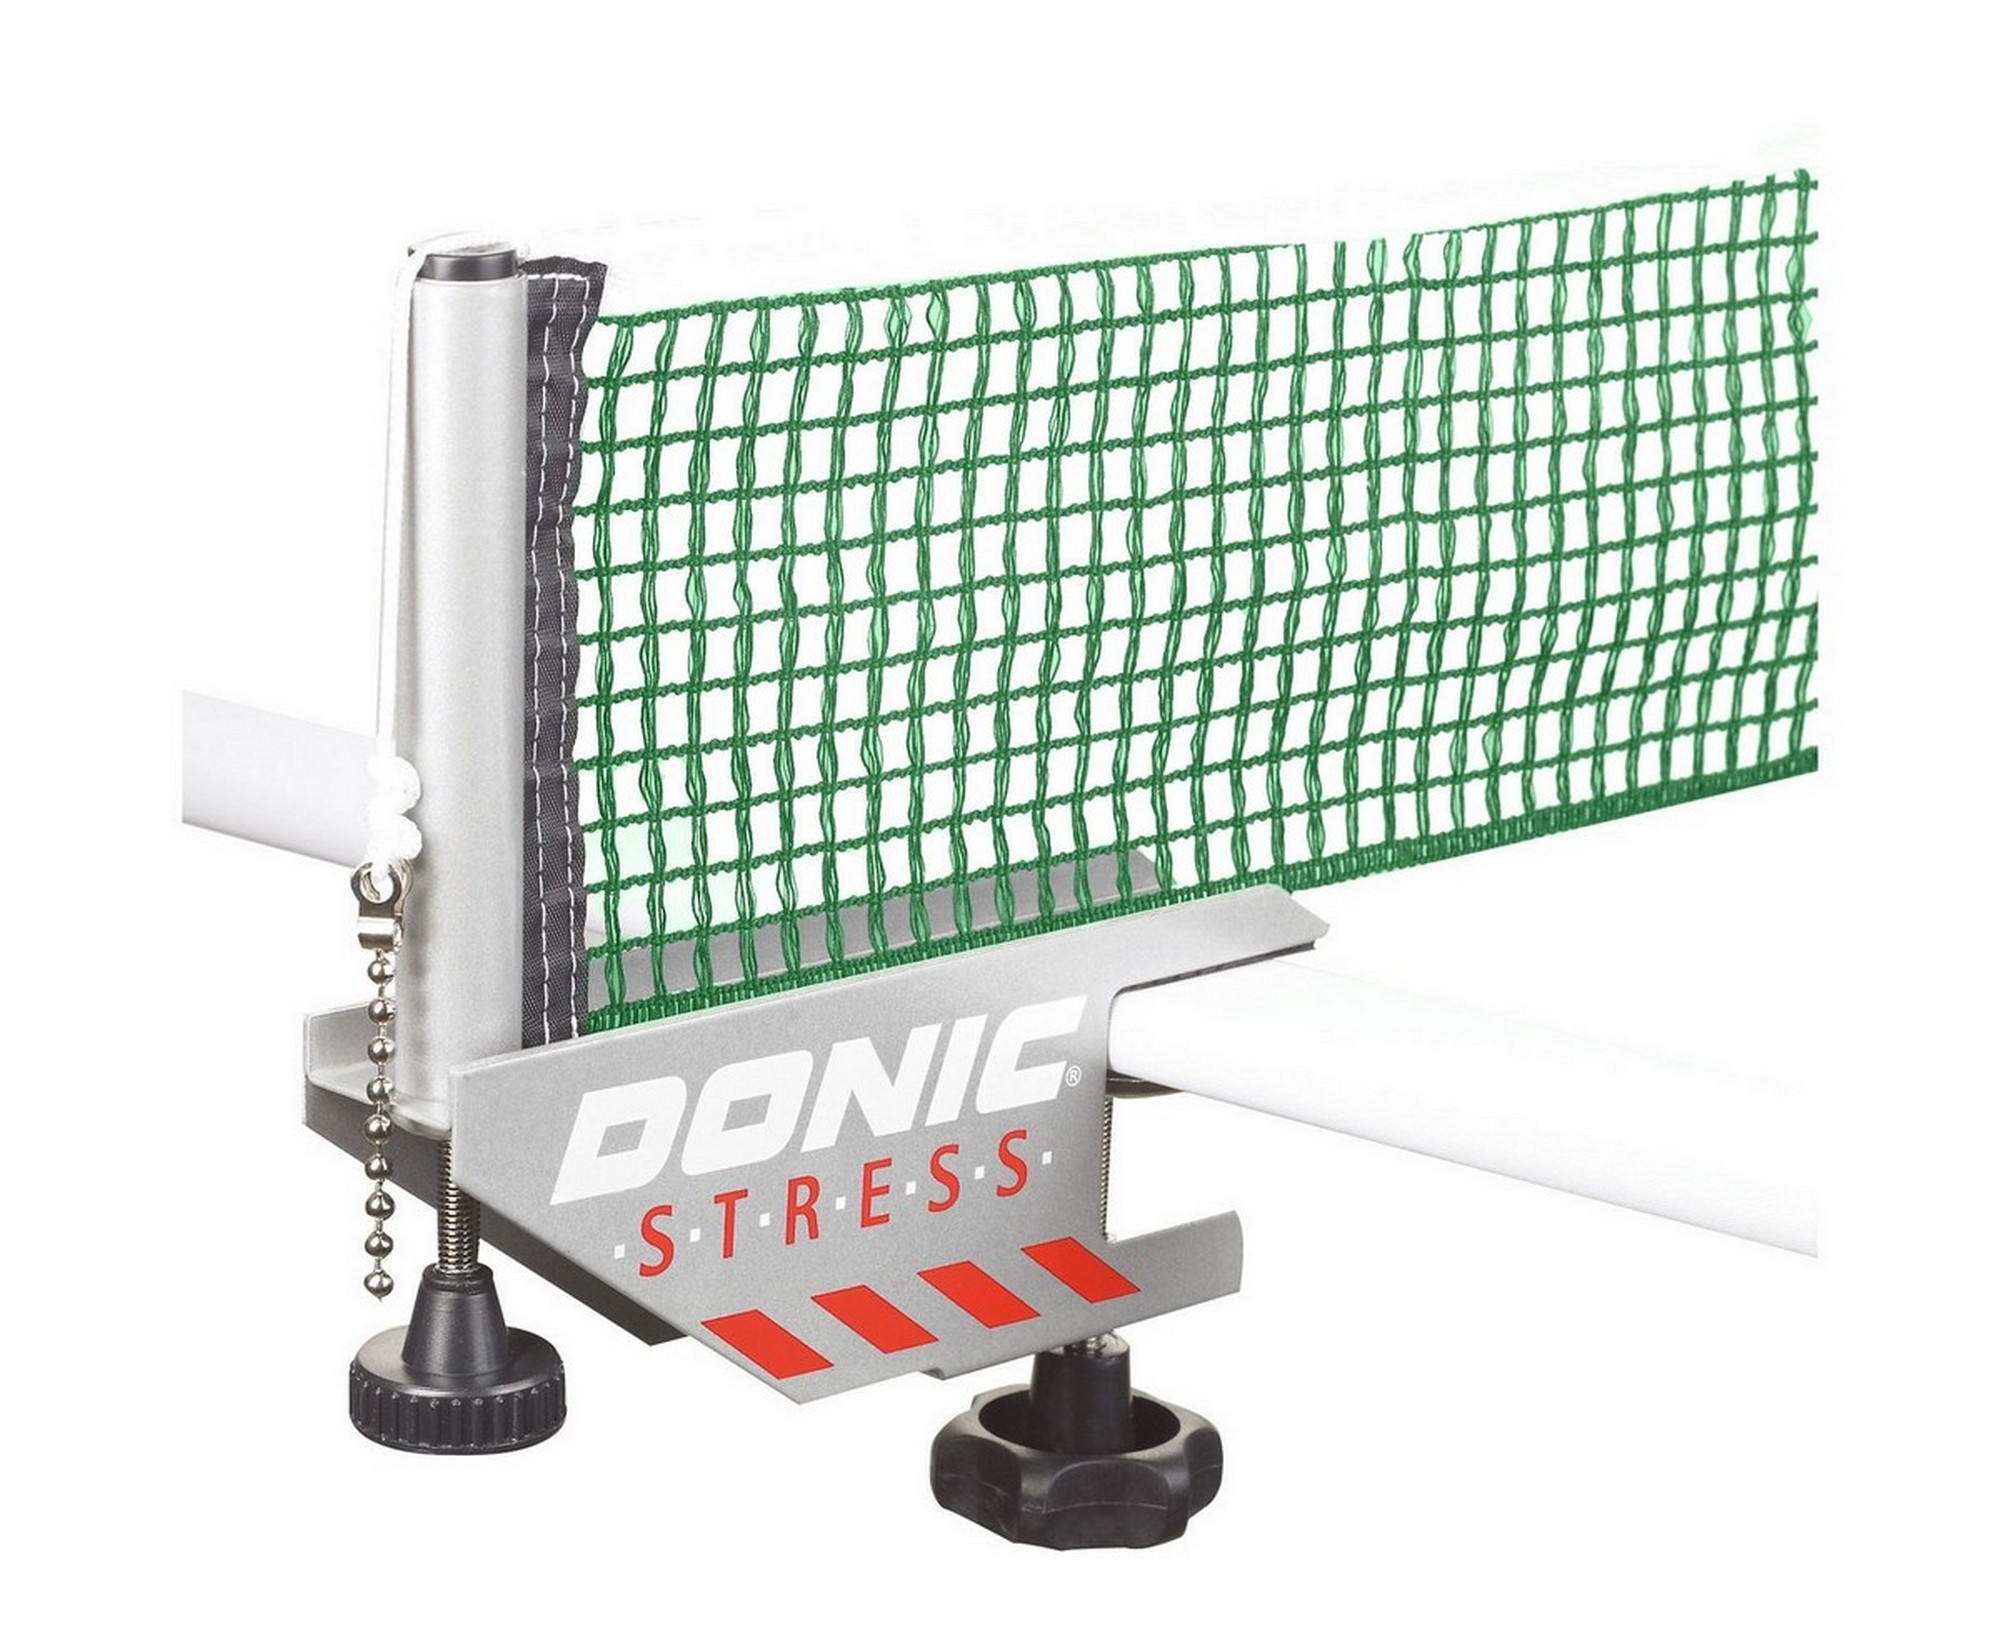 фото Сетка для настольного тенниса donic stress 410211-gg серый с зеленым